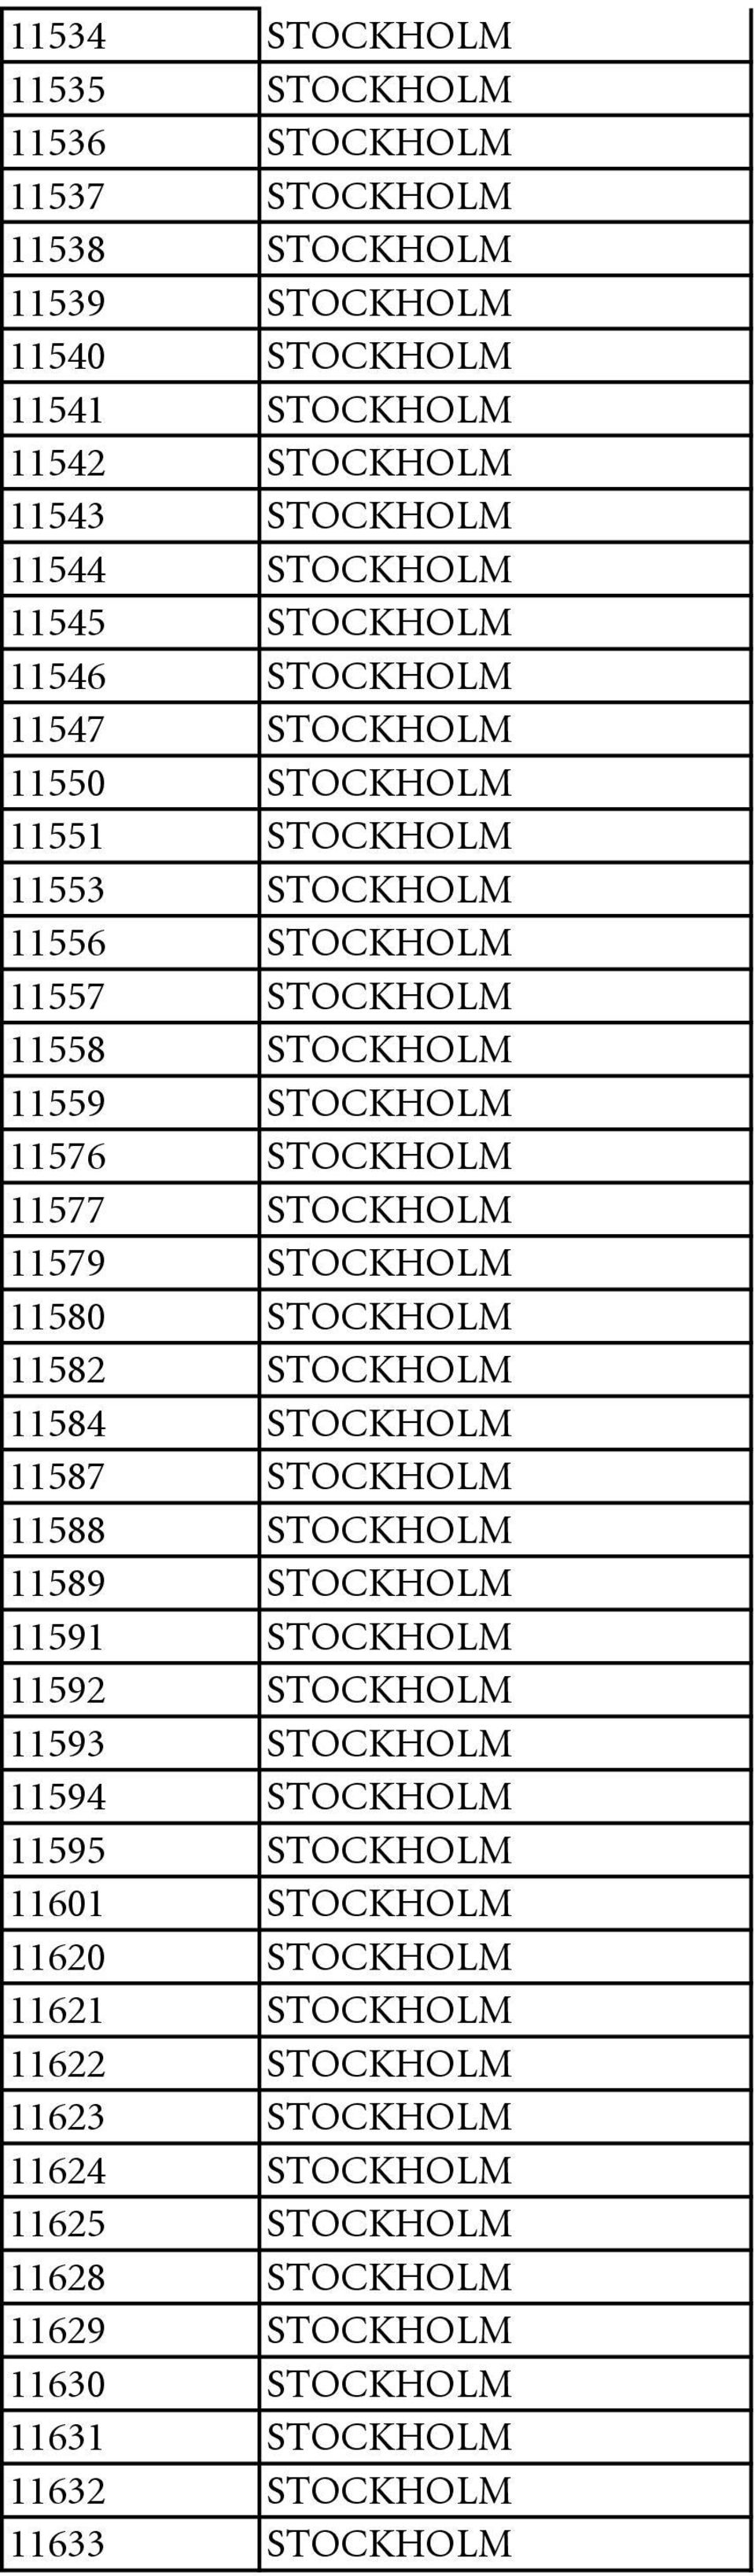 11580 STOCKHOLM 11582 STOCKHOLM 11584 STOCKHOLM 11587 STOCKHOLM 11588 STOCKHOLM 11589 STOCKHOLM 11591 STOCKHOLM 11592 STOCKHOLM 11593 STOCKHOLM 11594 STOCKHOLM 11595 STOCKHOLM 11601 STOCKHOLM